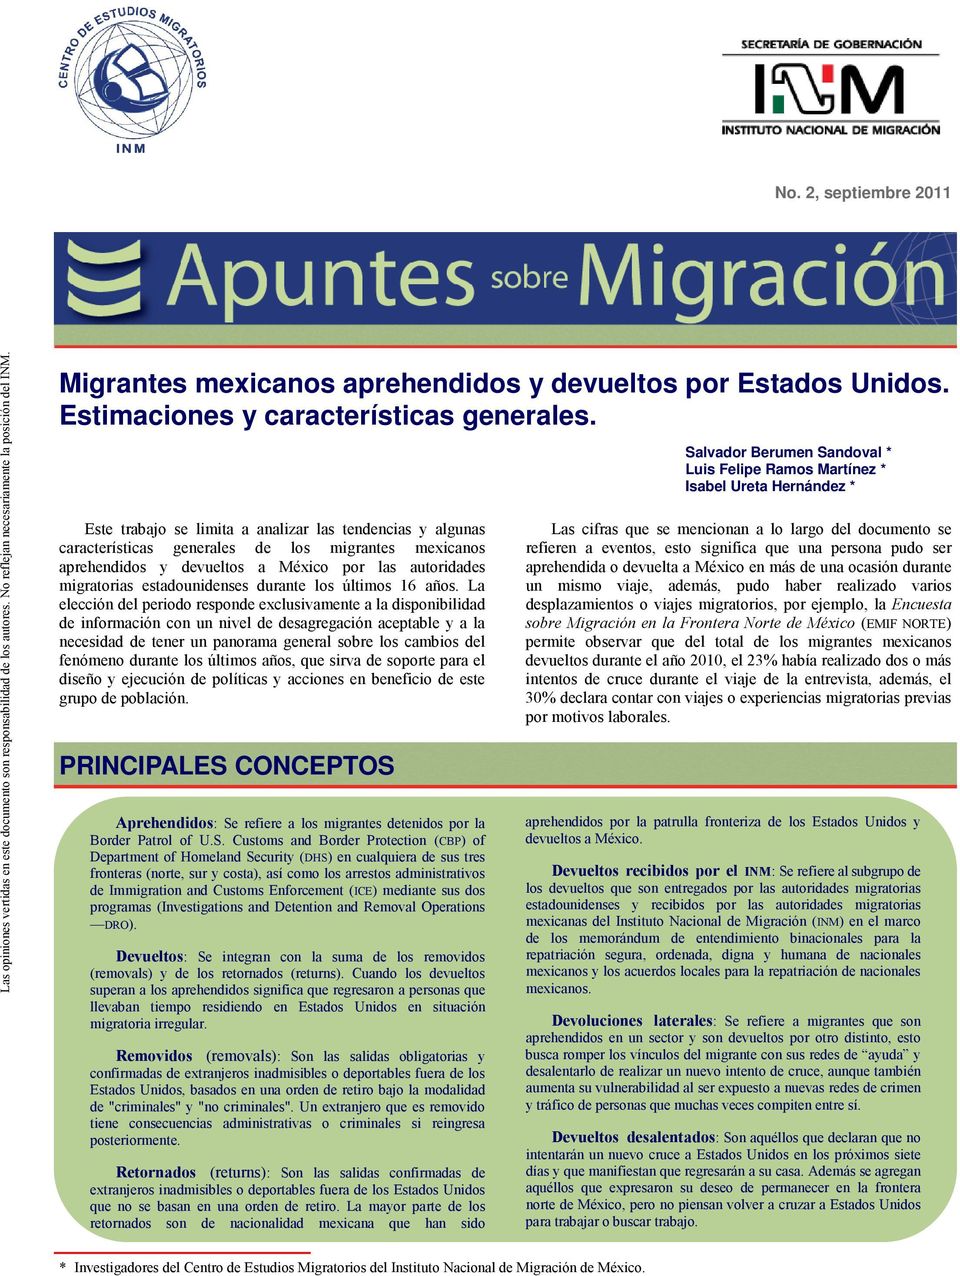 Este trabajo se limita a analizar las tendencias y algunas características generales de los migrantes mexicanos aprehendidos y devueltos a México por las autoridades migratorias estadounidenses